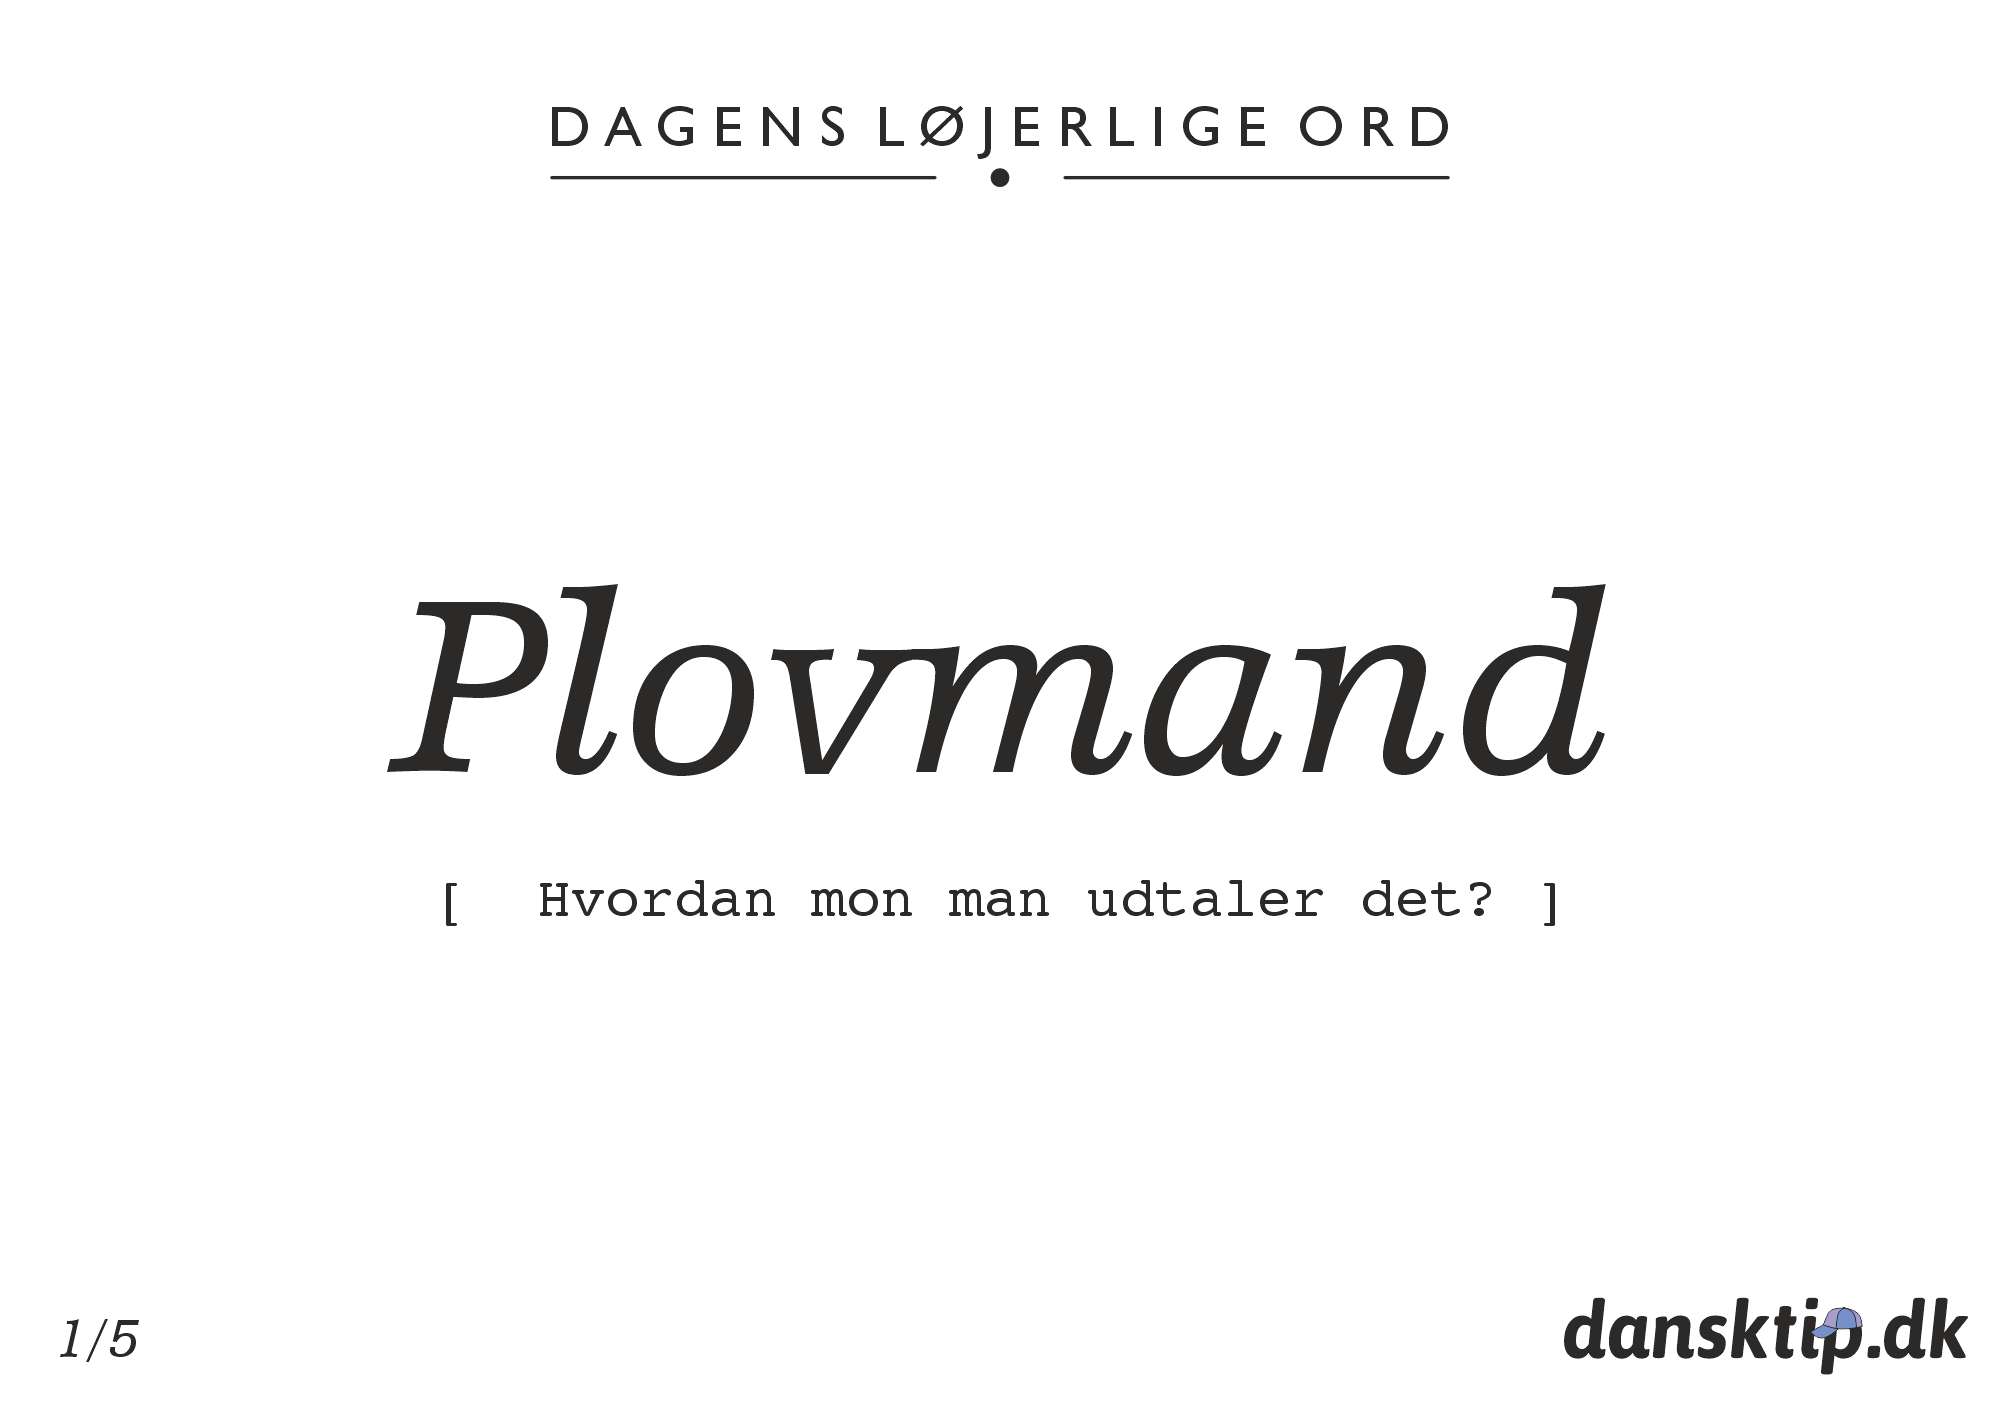 Plovmand